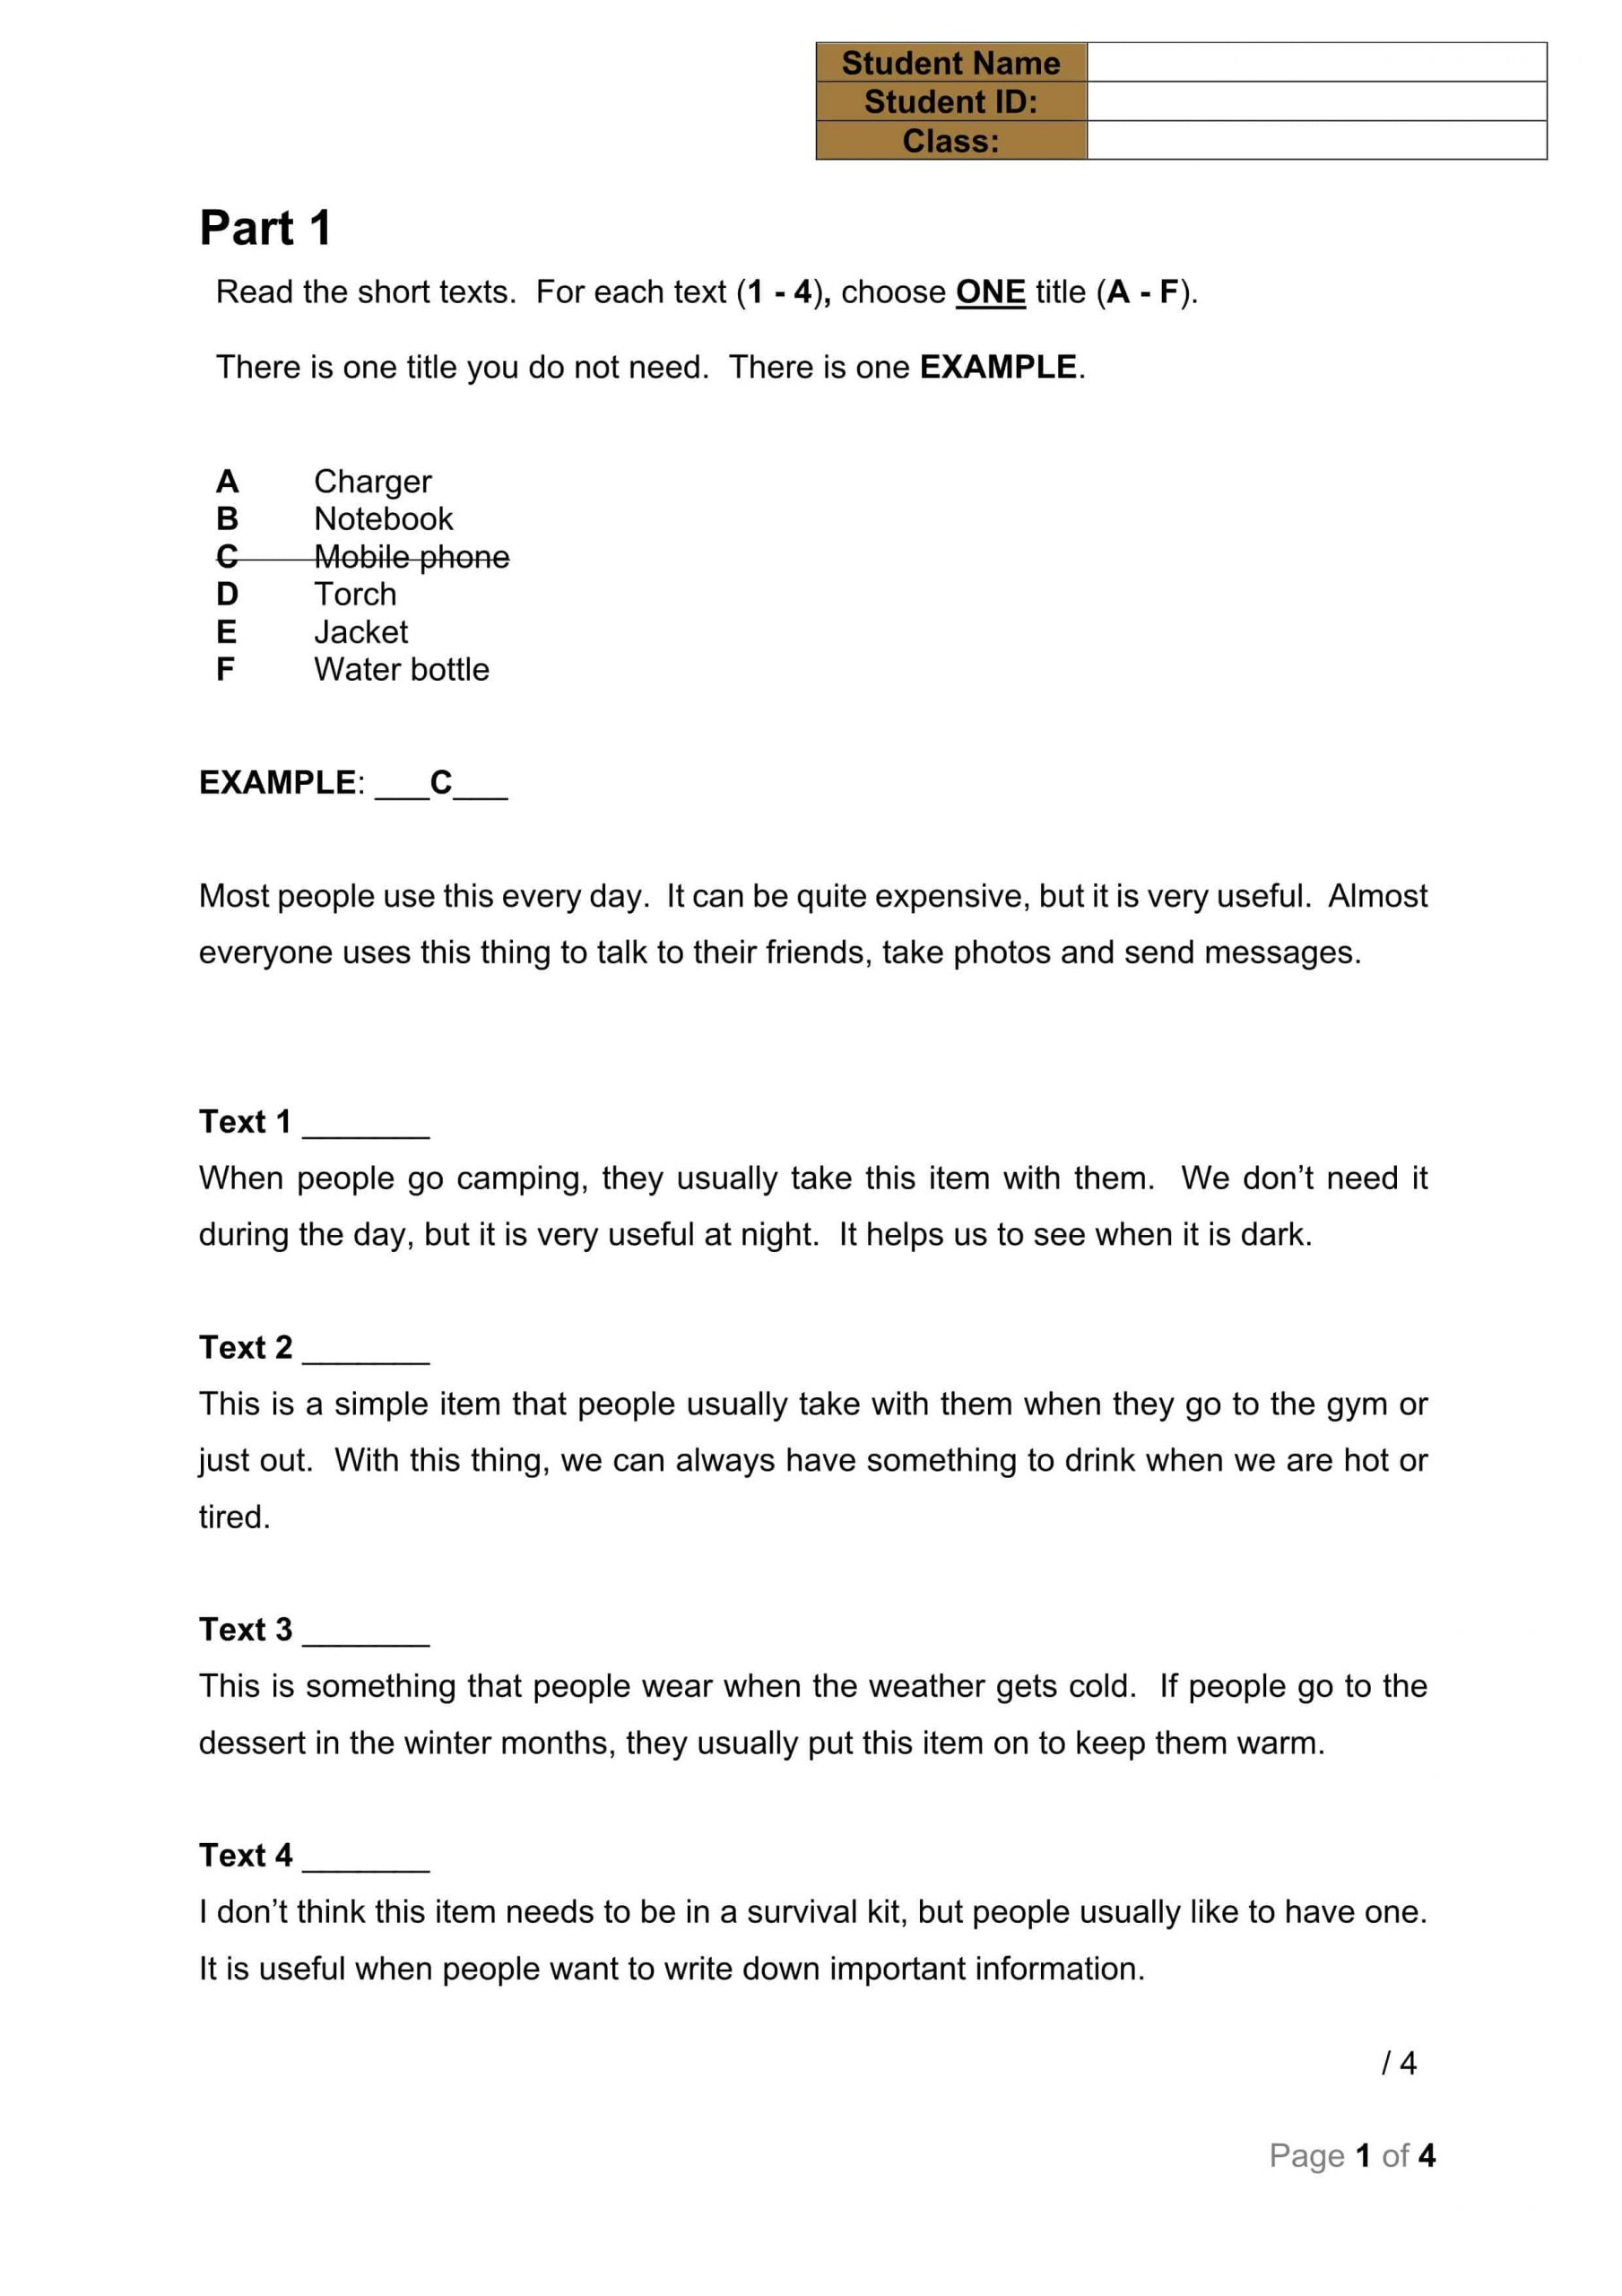 ورقة عمل Reading Pop Quiz 1 الصف التاسع عام مادة اللغة الإنجليزيةورقة عمل Reading Pop Quiz 1 الصف التاسع عام مادة اللغة الإنجليزية